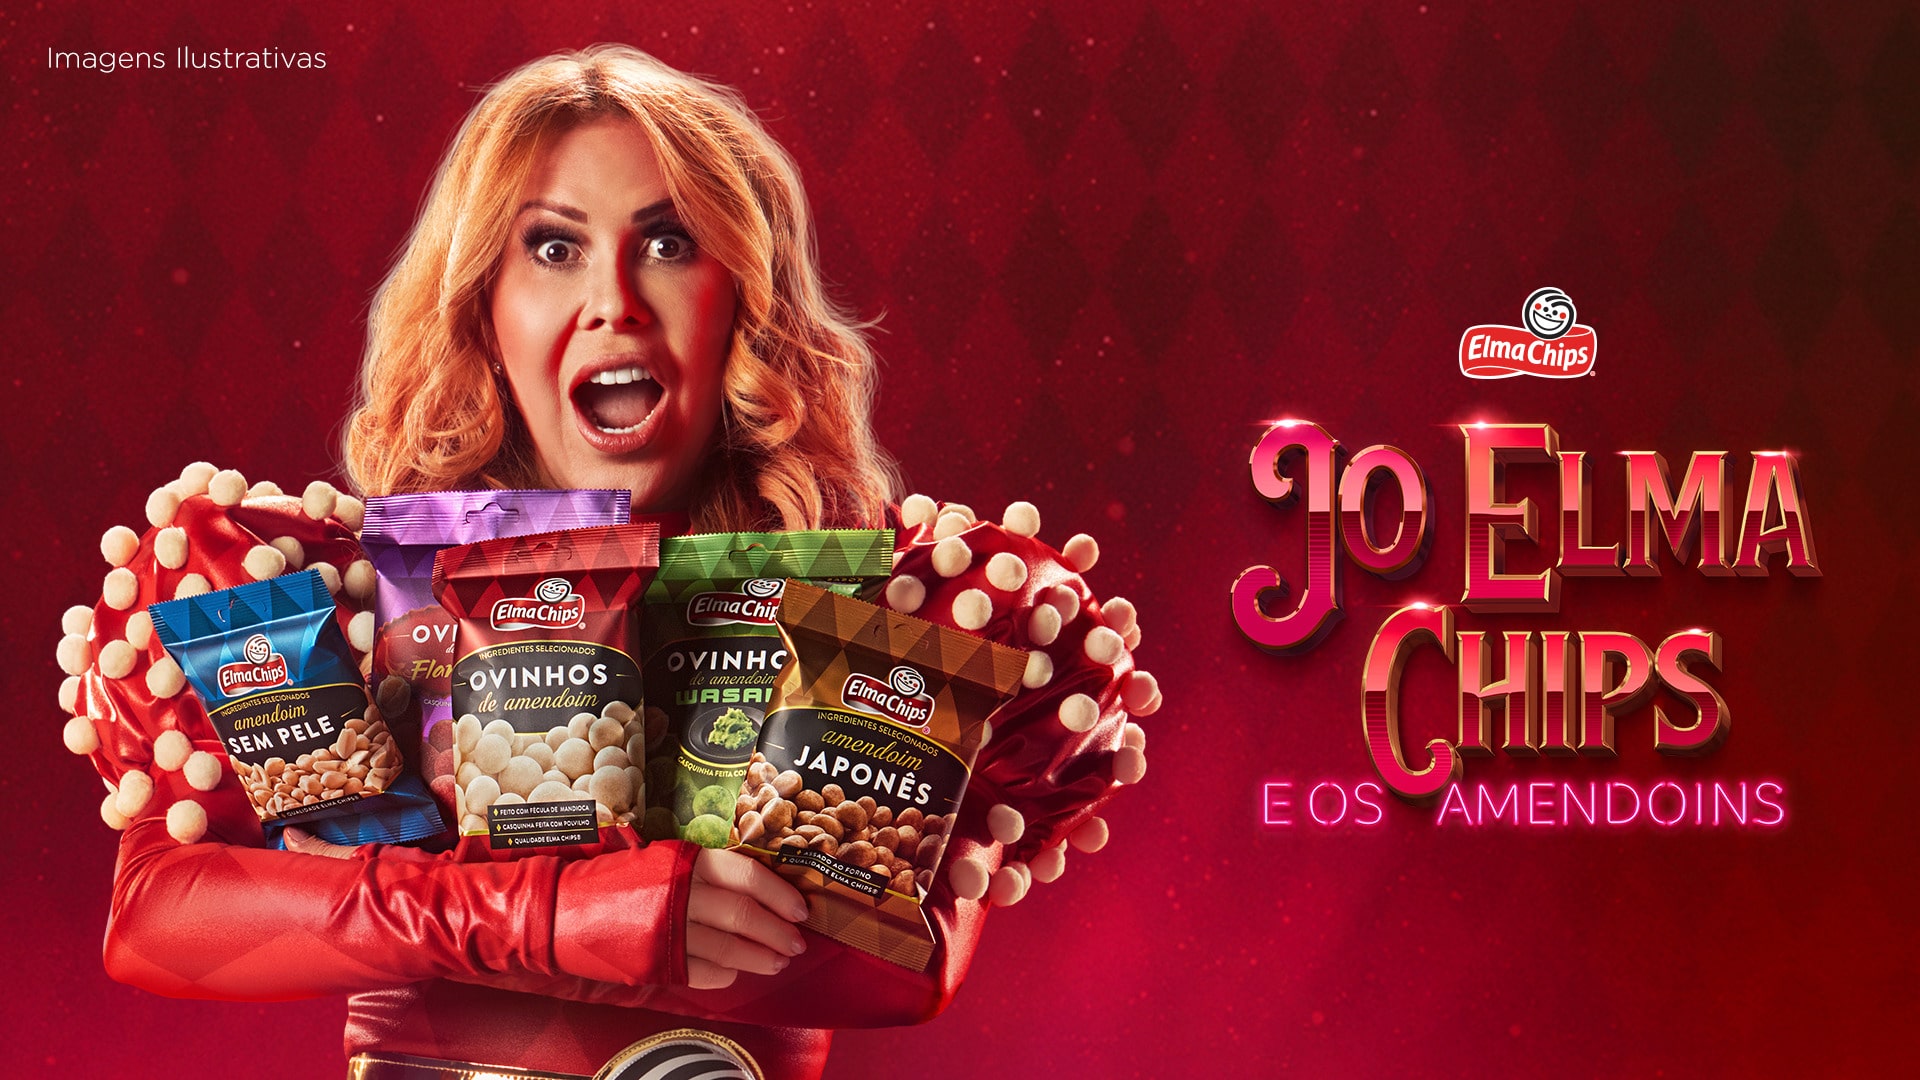 Elma Chips estreia campanha com Joelma e anuncia novos sabores